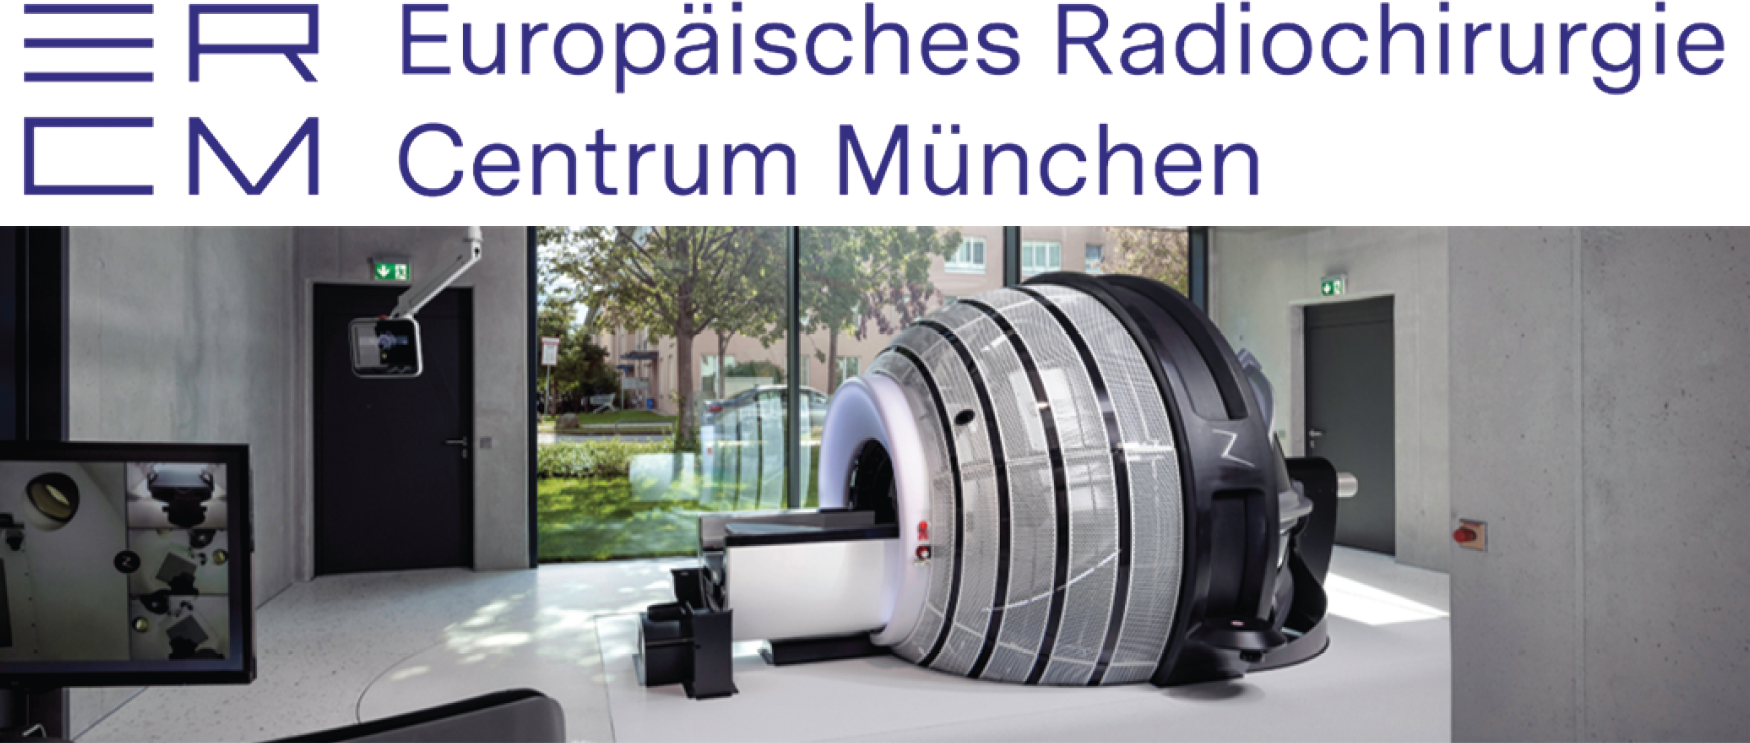 ERCM Europäisches Radiochirurgie Centrum München